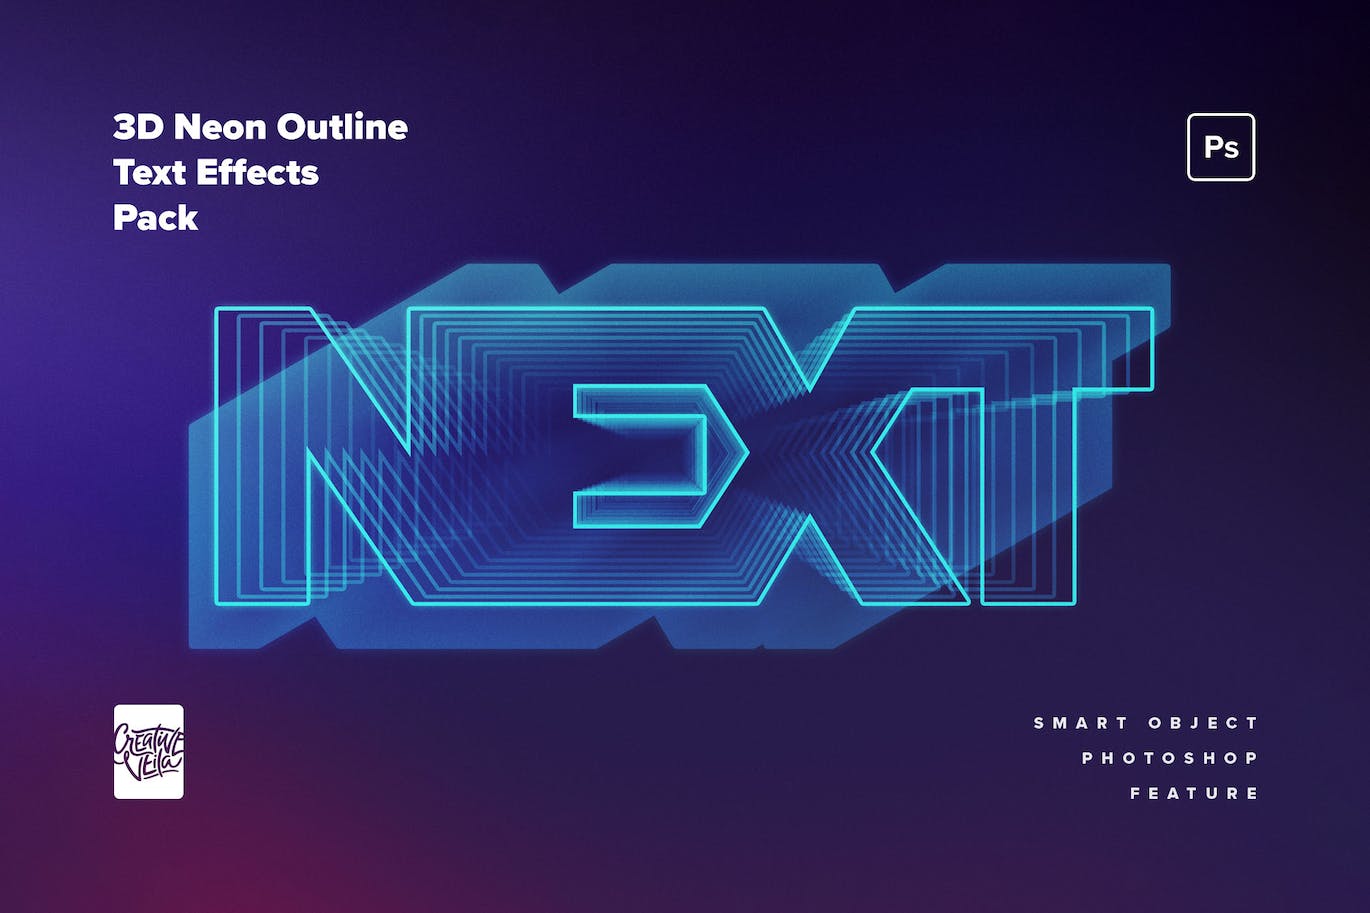 80年代复古未来主义3D霓虹灯文本效果 80s Retro-Futuristic 3D Neon Text Effect 插件预设 第4张